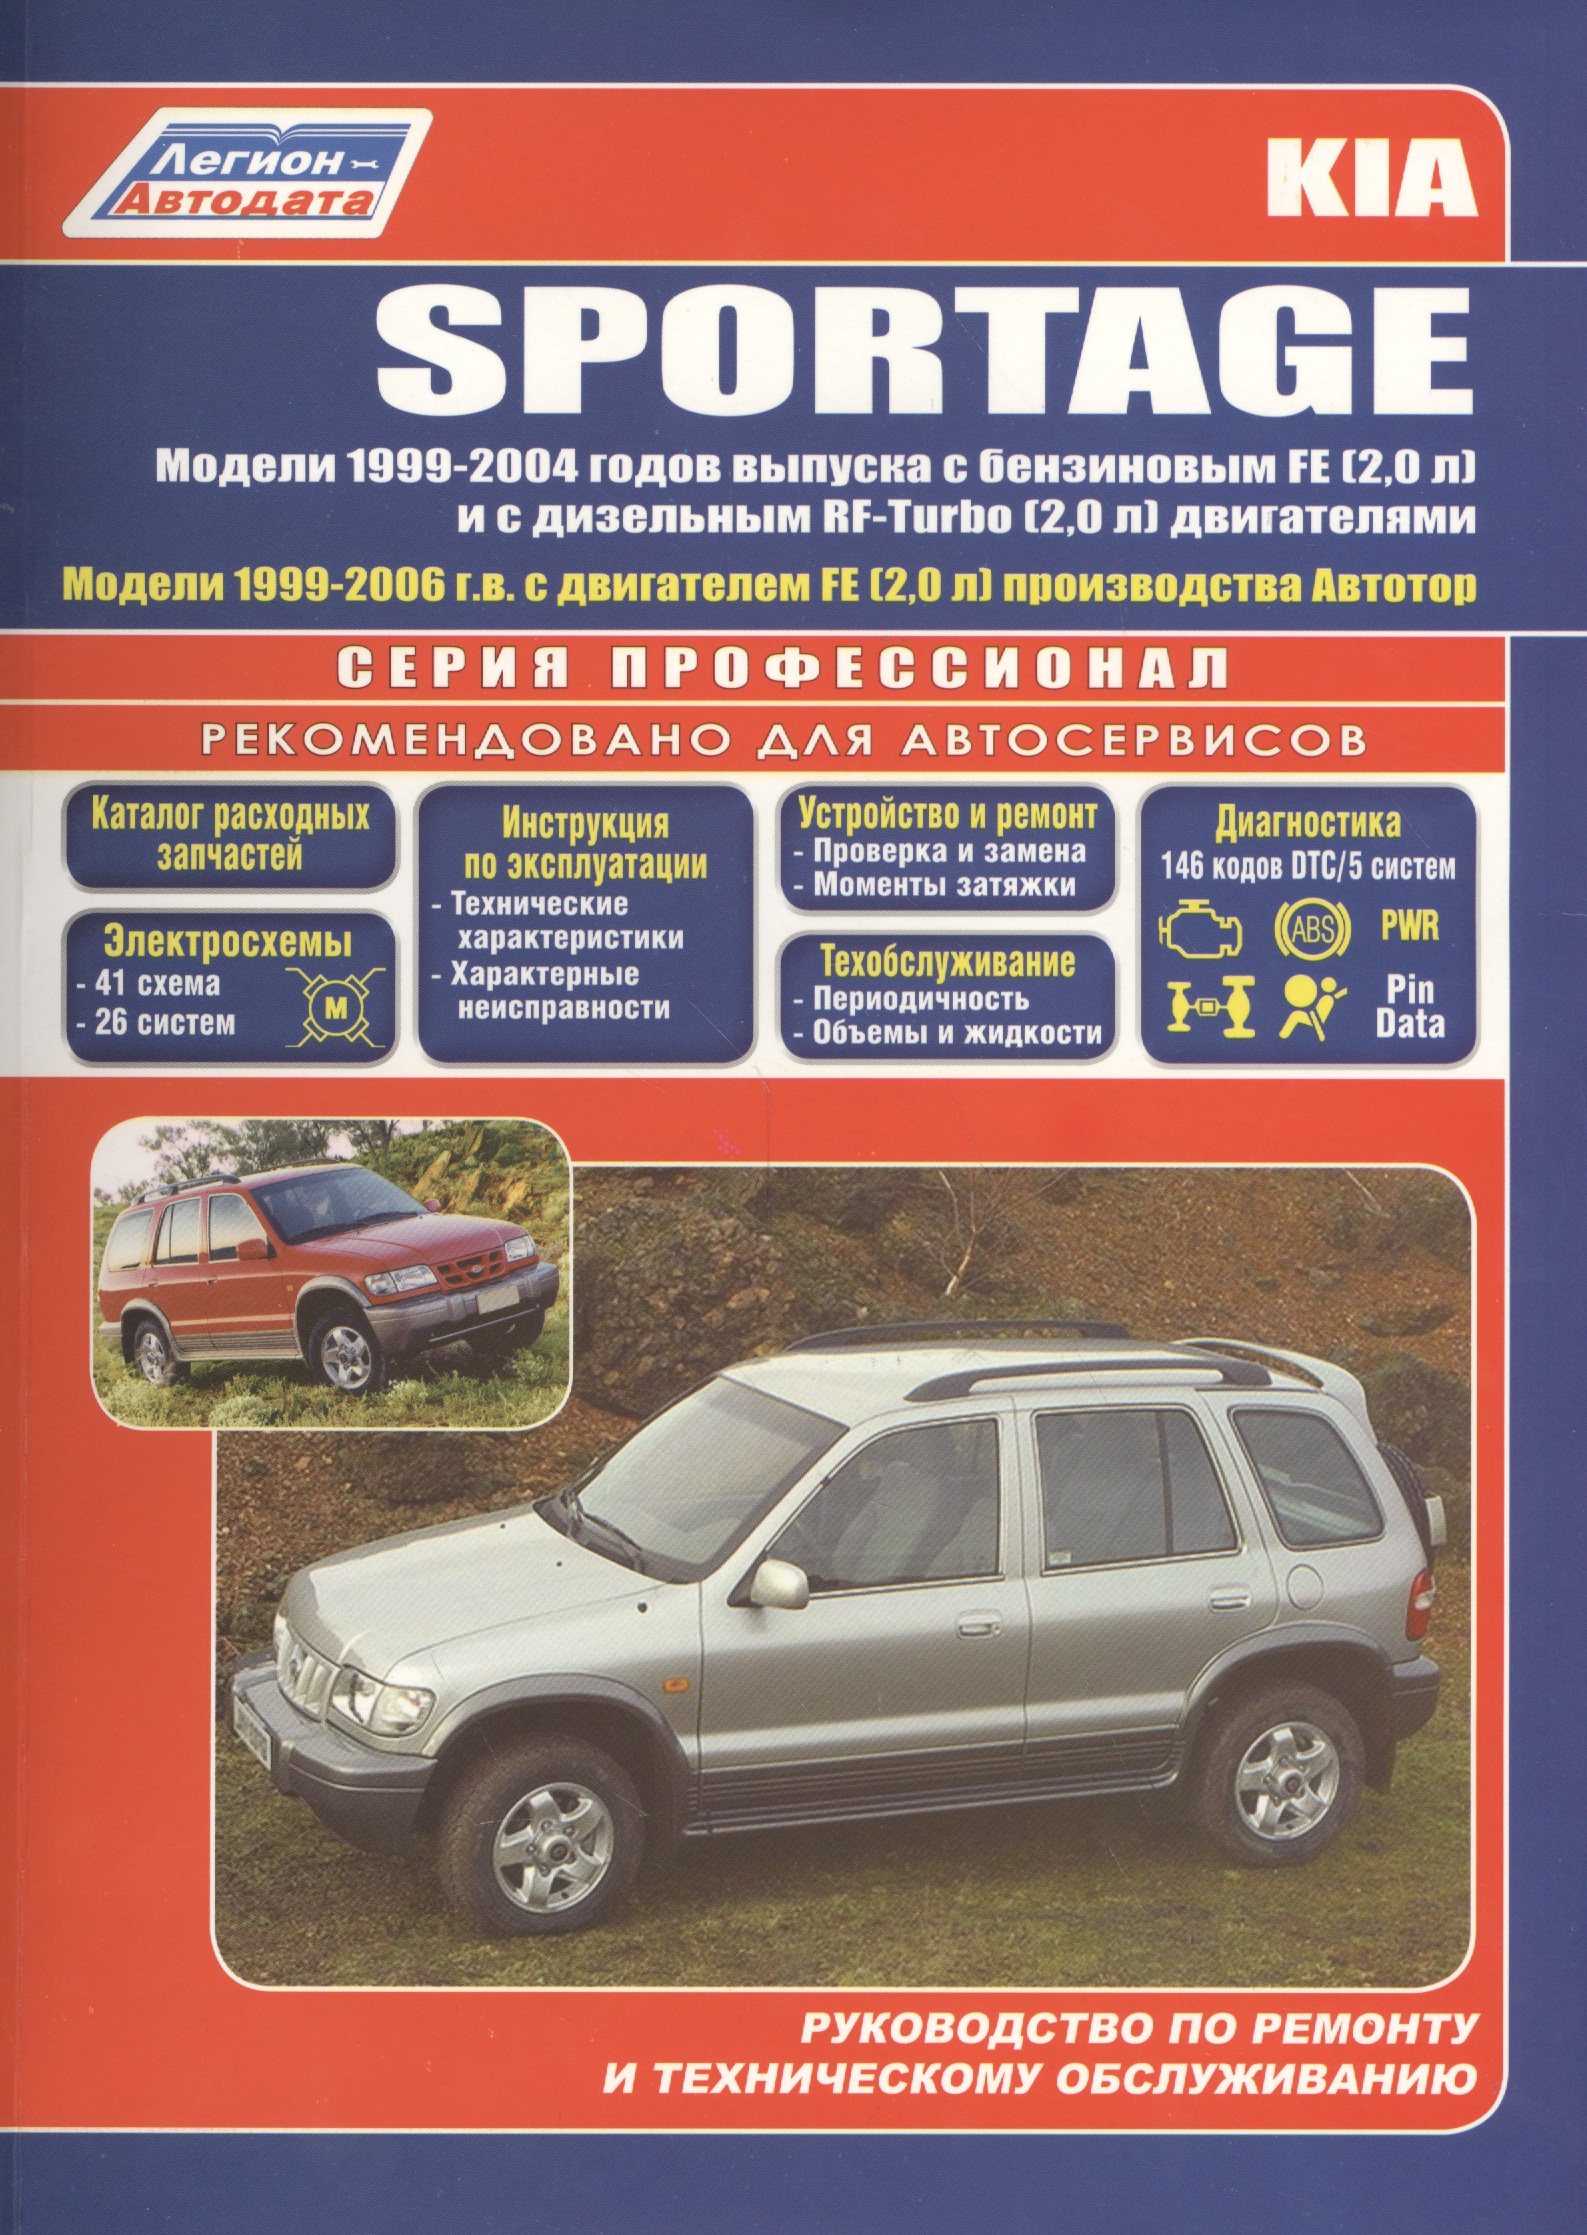 Kia Sportage Модели 2WD&4WD 1999-2004 г вып. с бенз. FE (2,0)…(мПрофессионал) руководство по ремонту эксплуатации и техническому обслуживанию автомобилей уаз 3151 2206